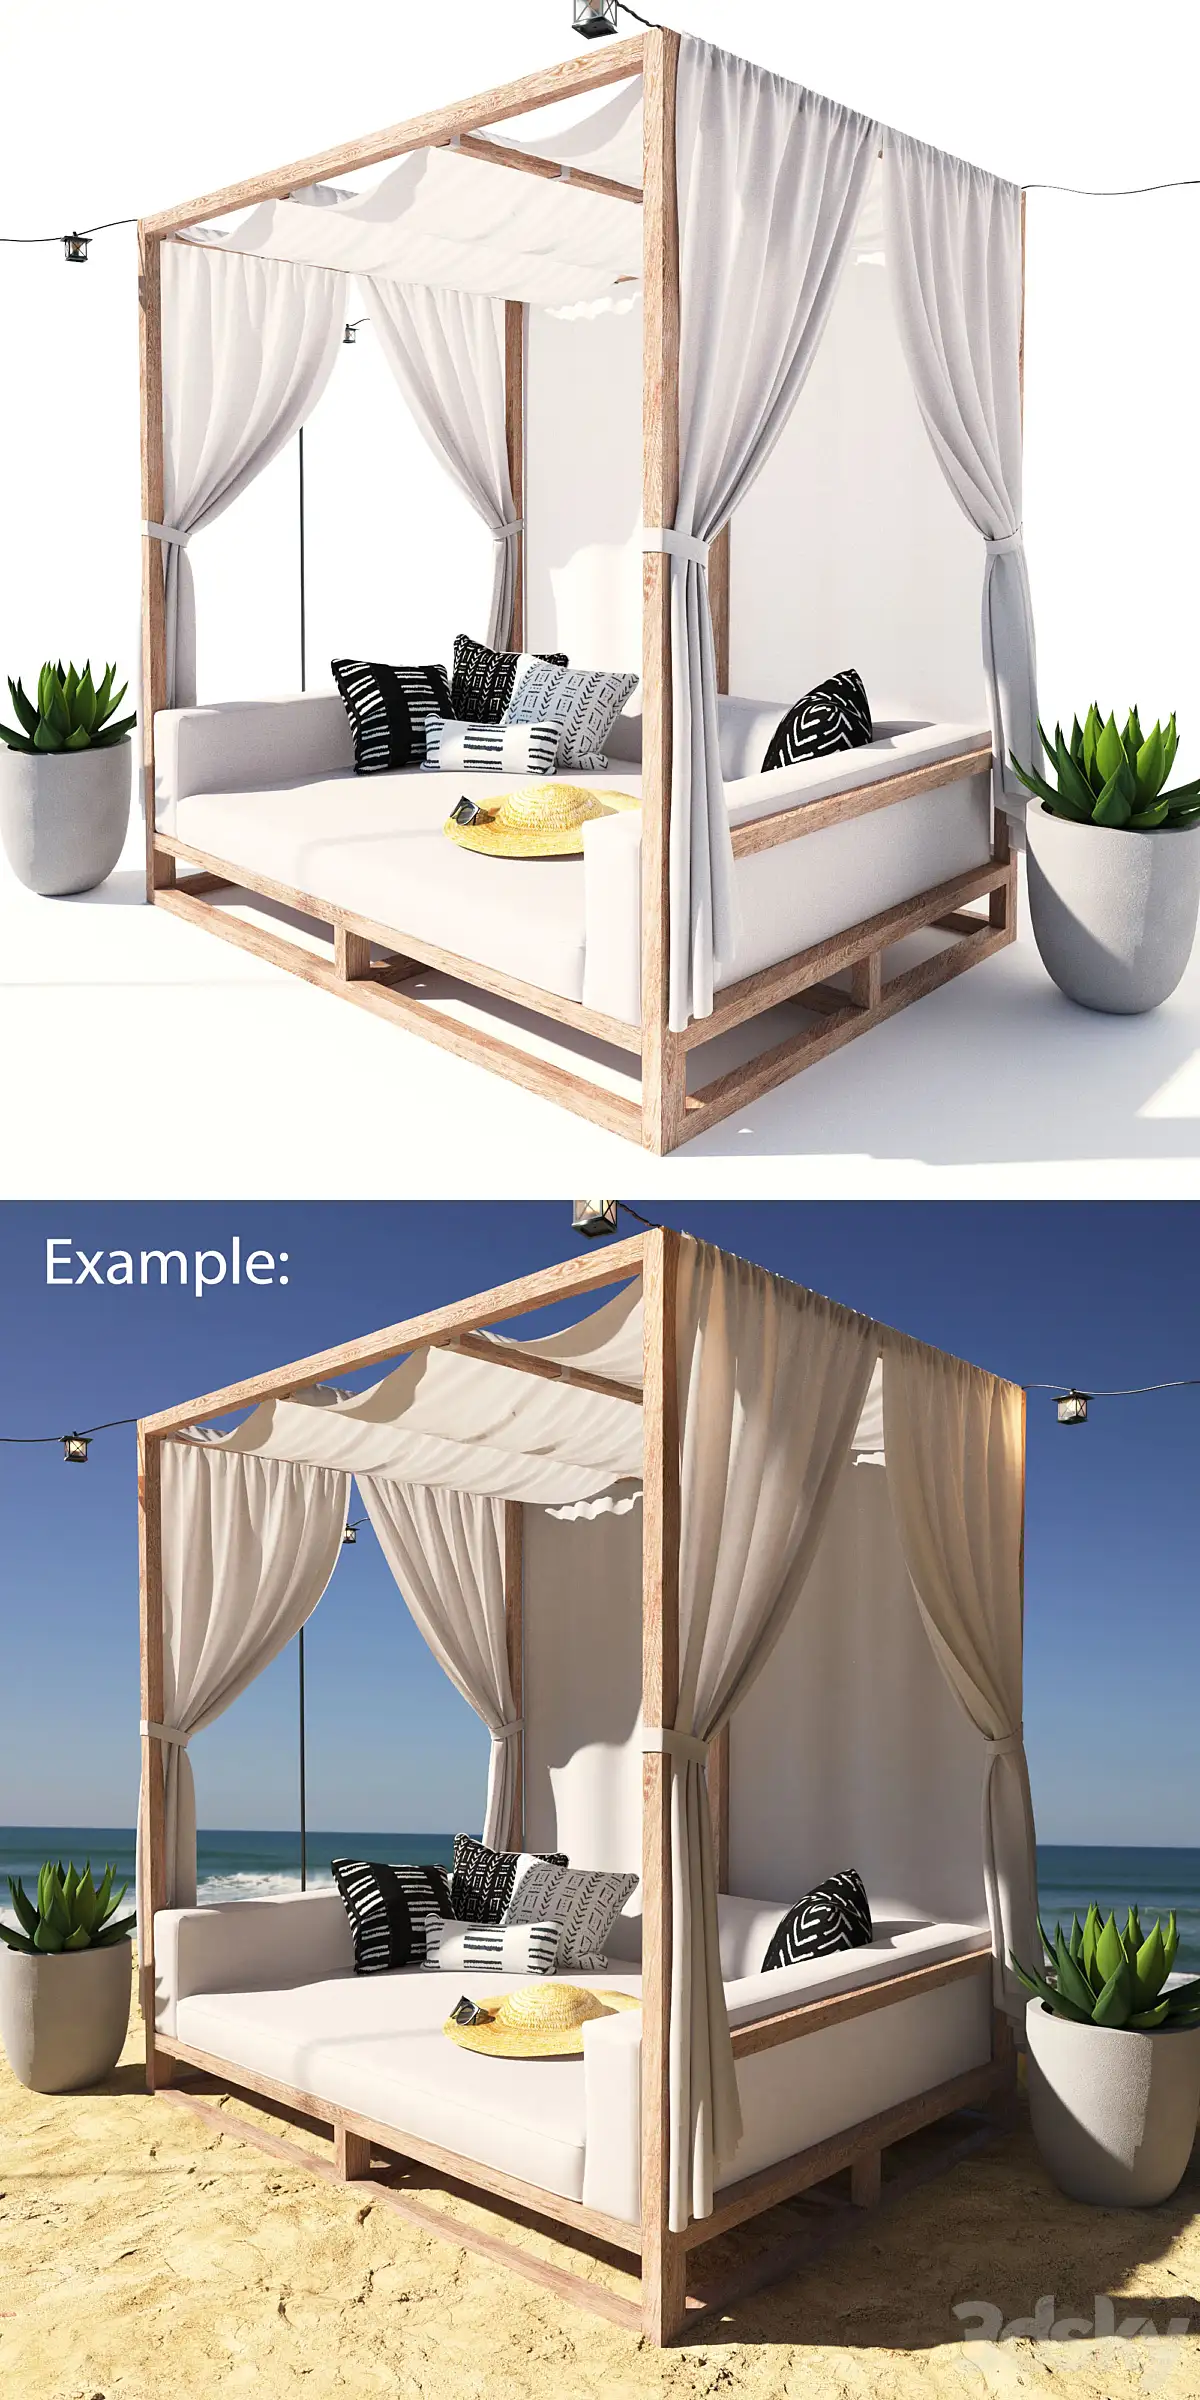 دانلود مدل سه بعدی تخت خواب مدرن 58 - 4